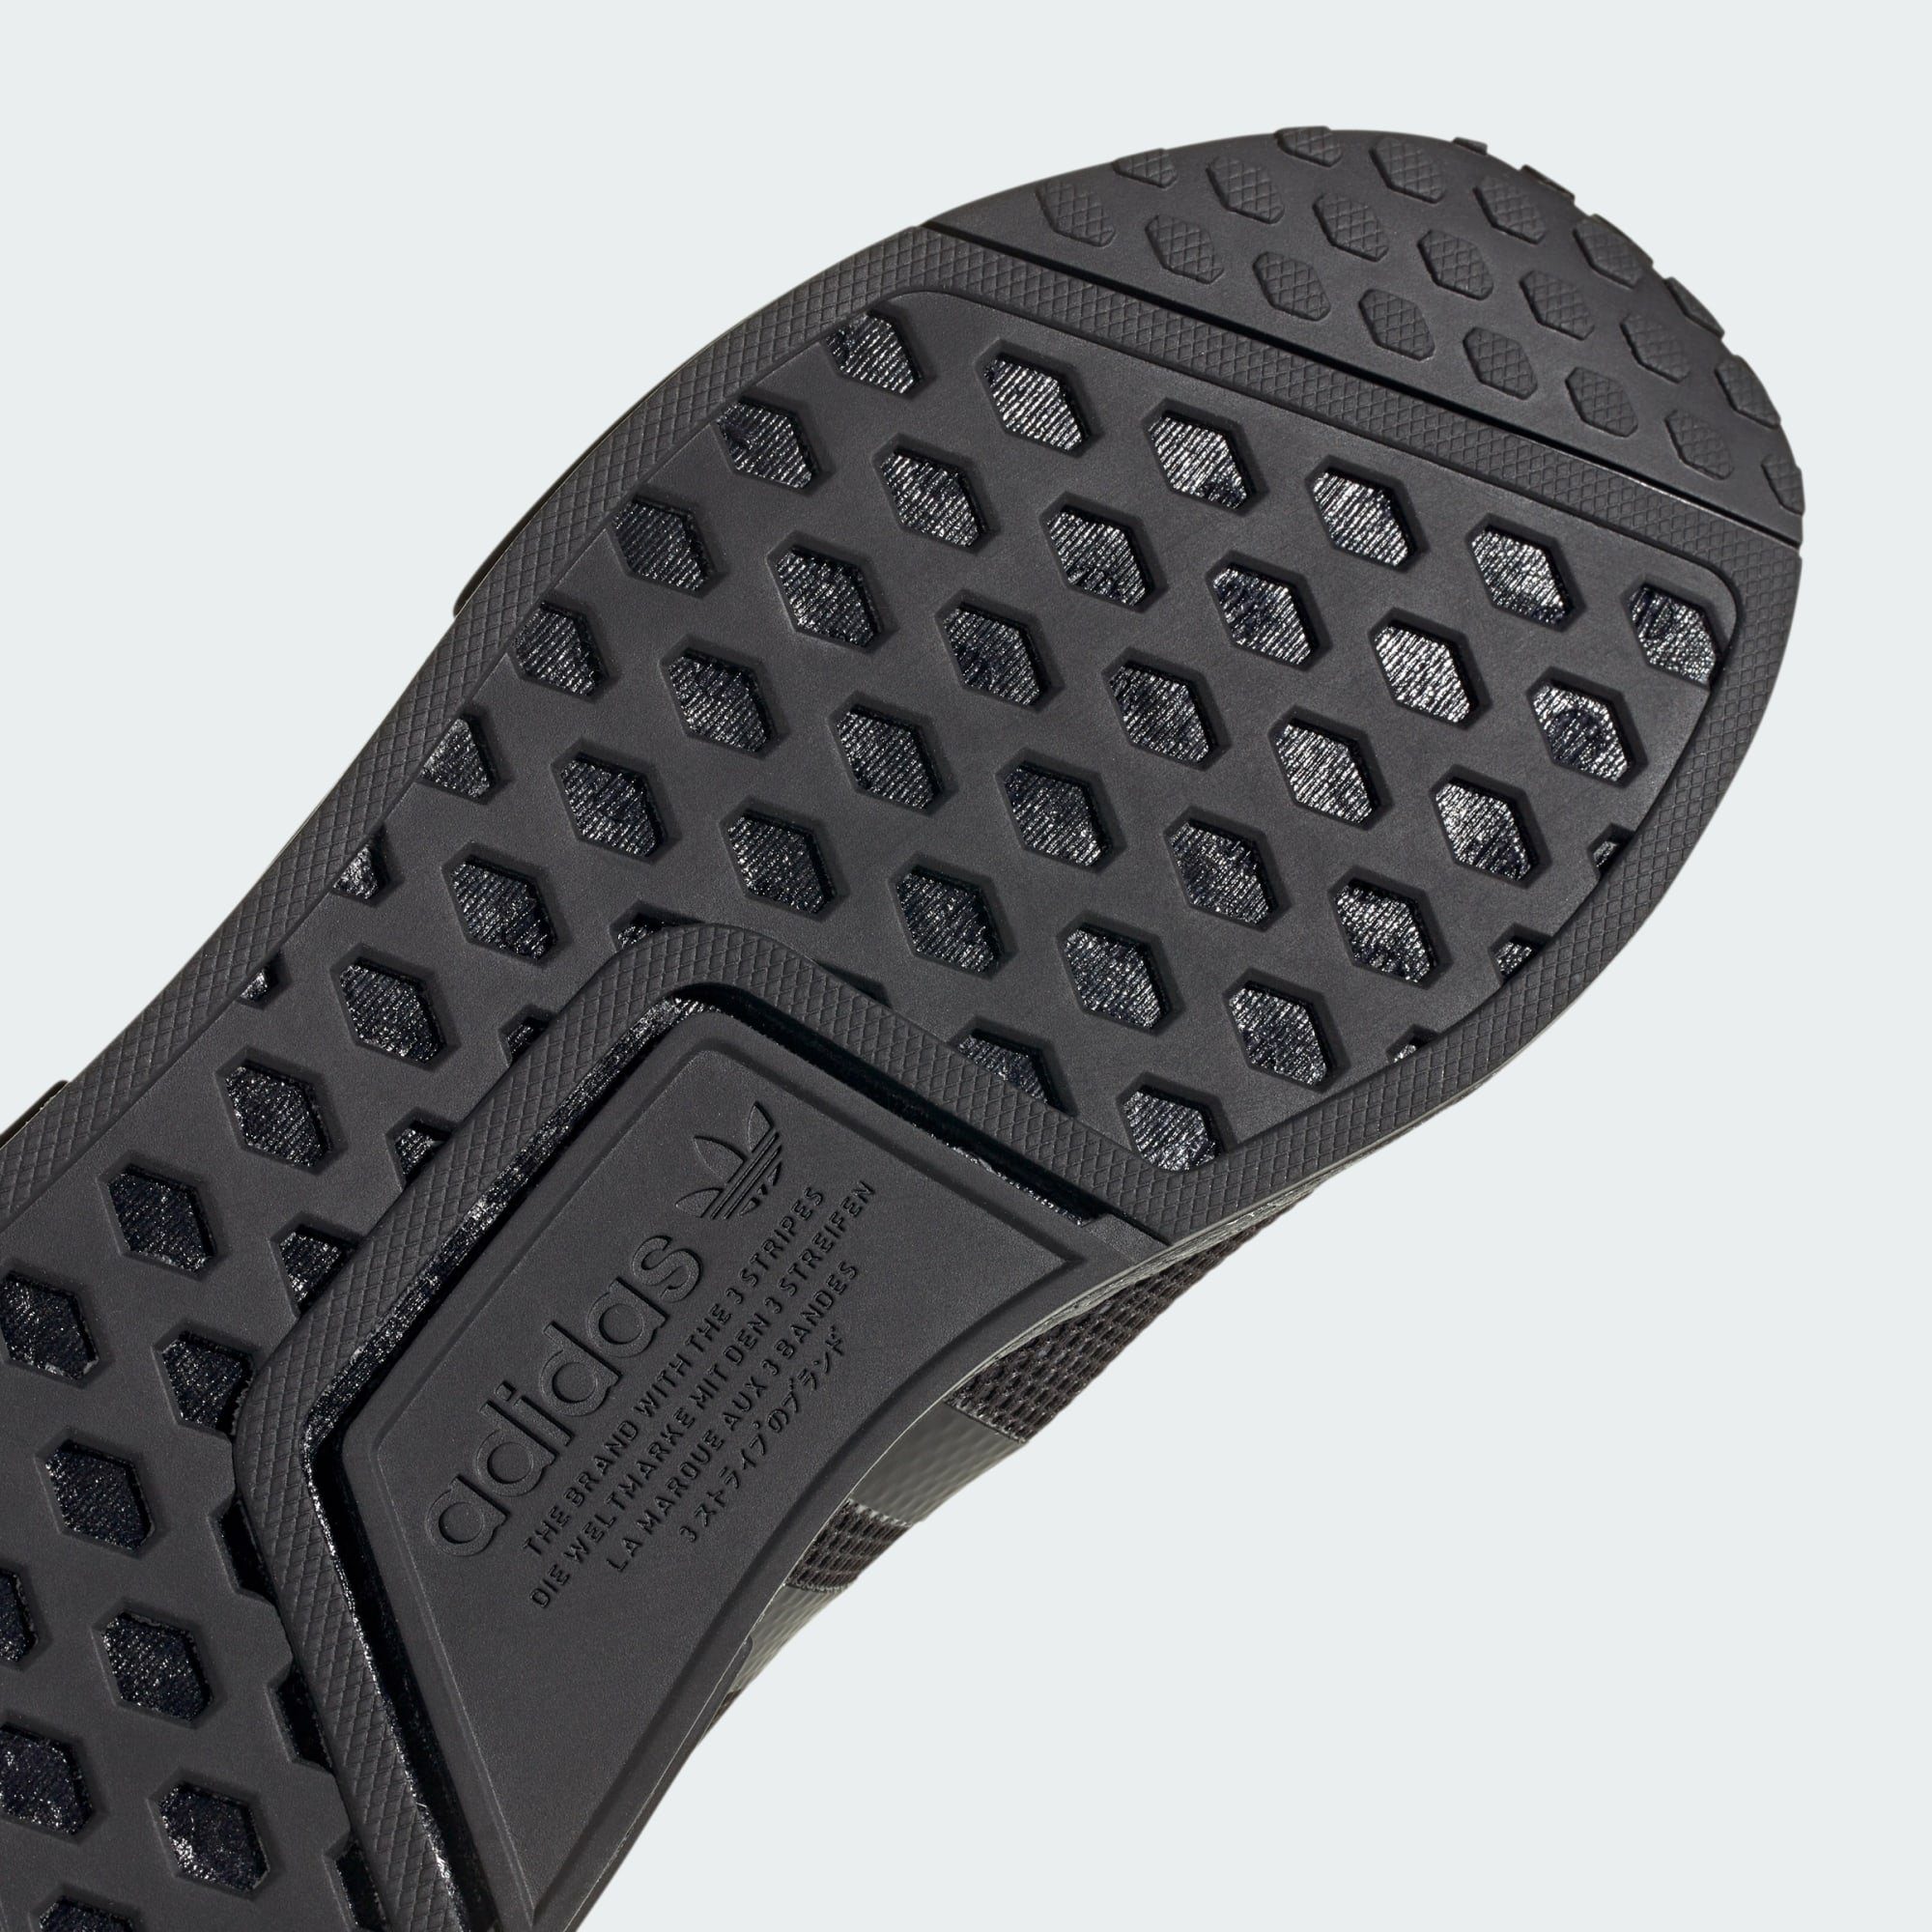 Core / SCHUH Five Grey Carbon adidas NMD_R1 Originals Black / Sneaker